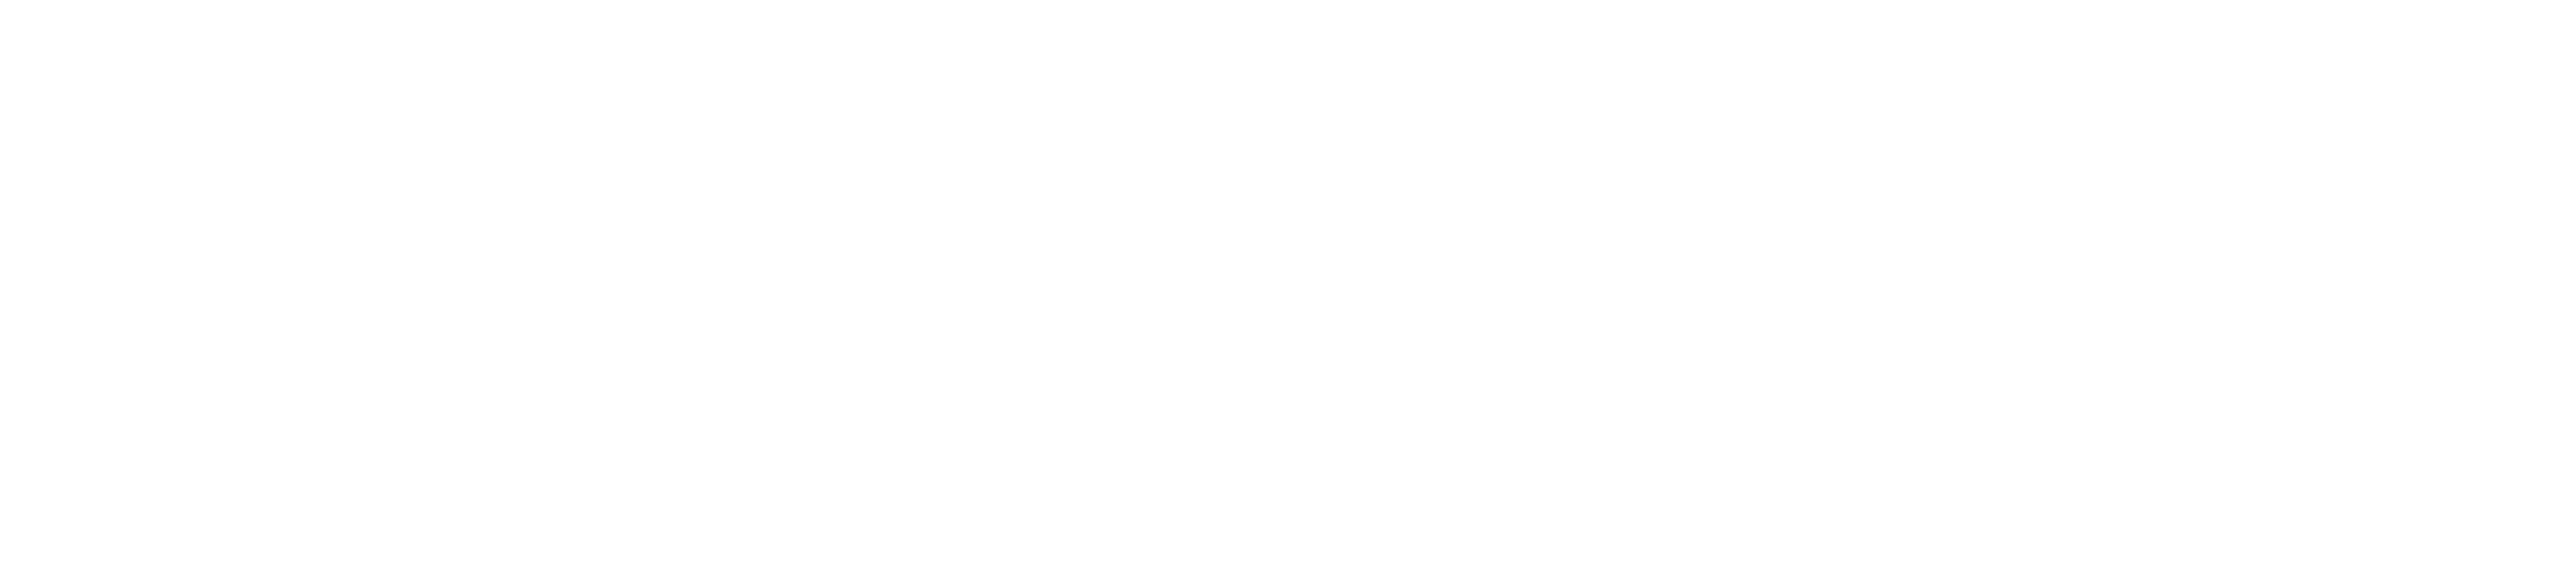 chubbies logo white